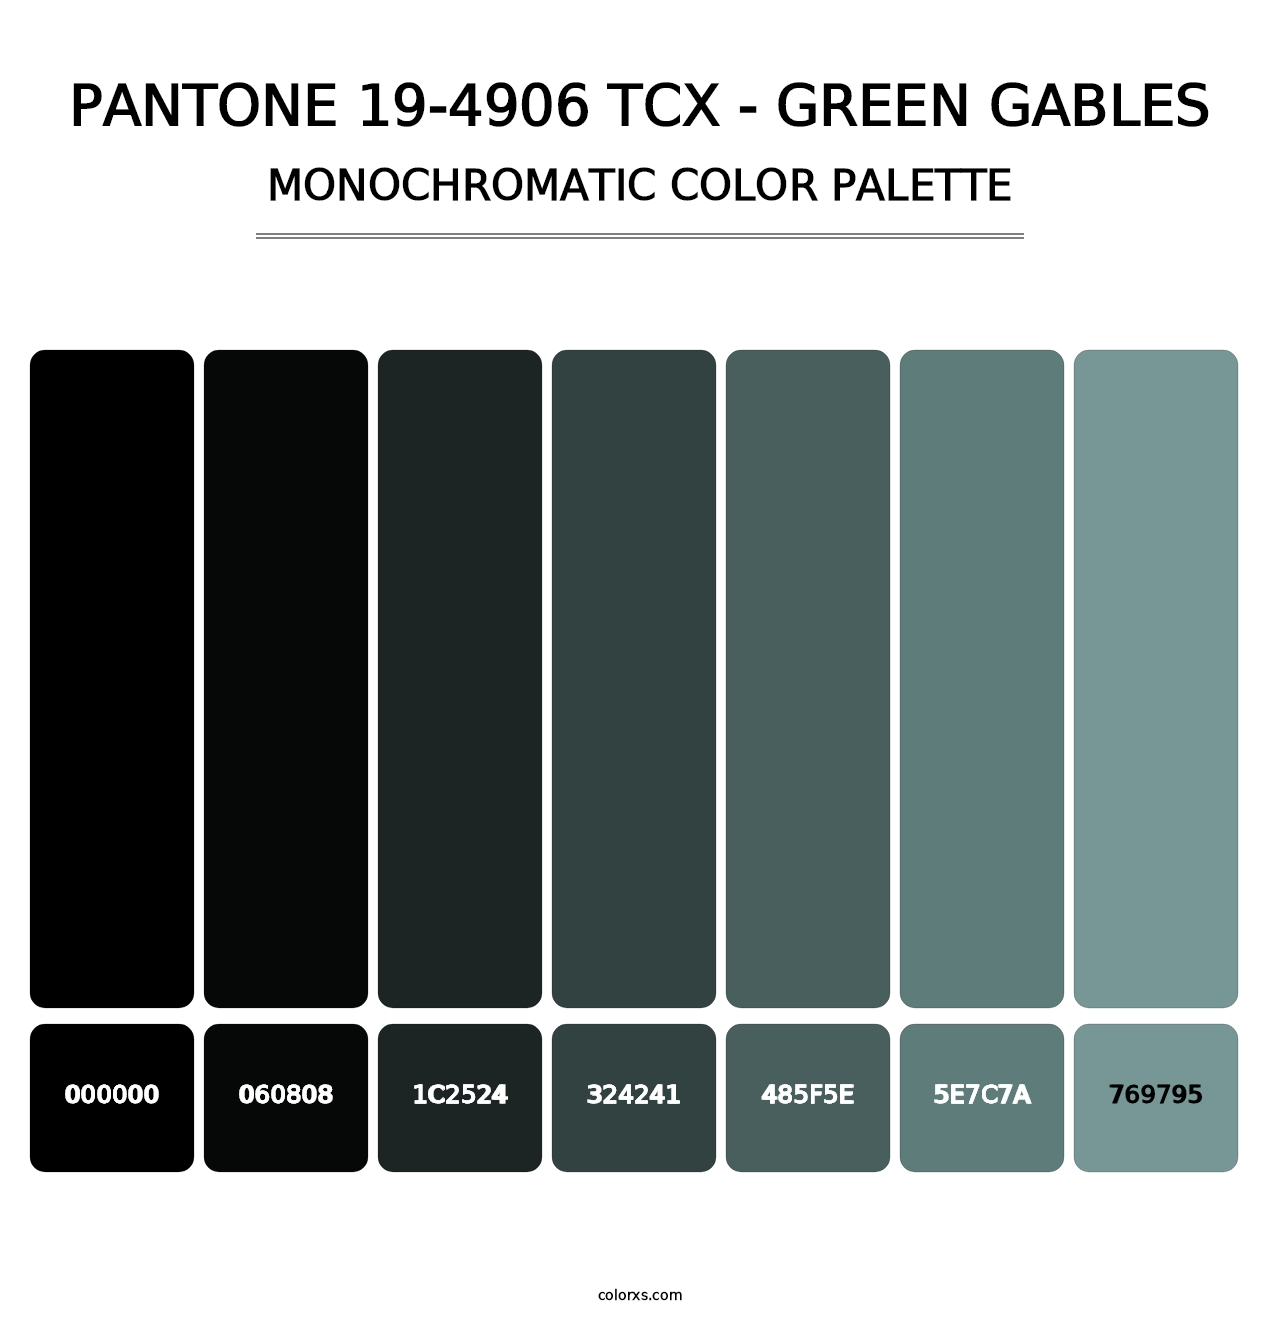 PANTONE 19-4906 TCX - Green Gables - Monochromatic Color Palette